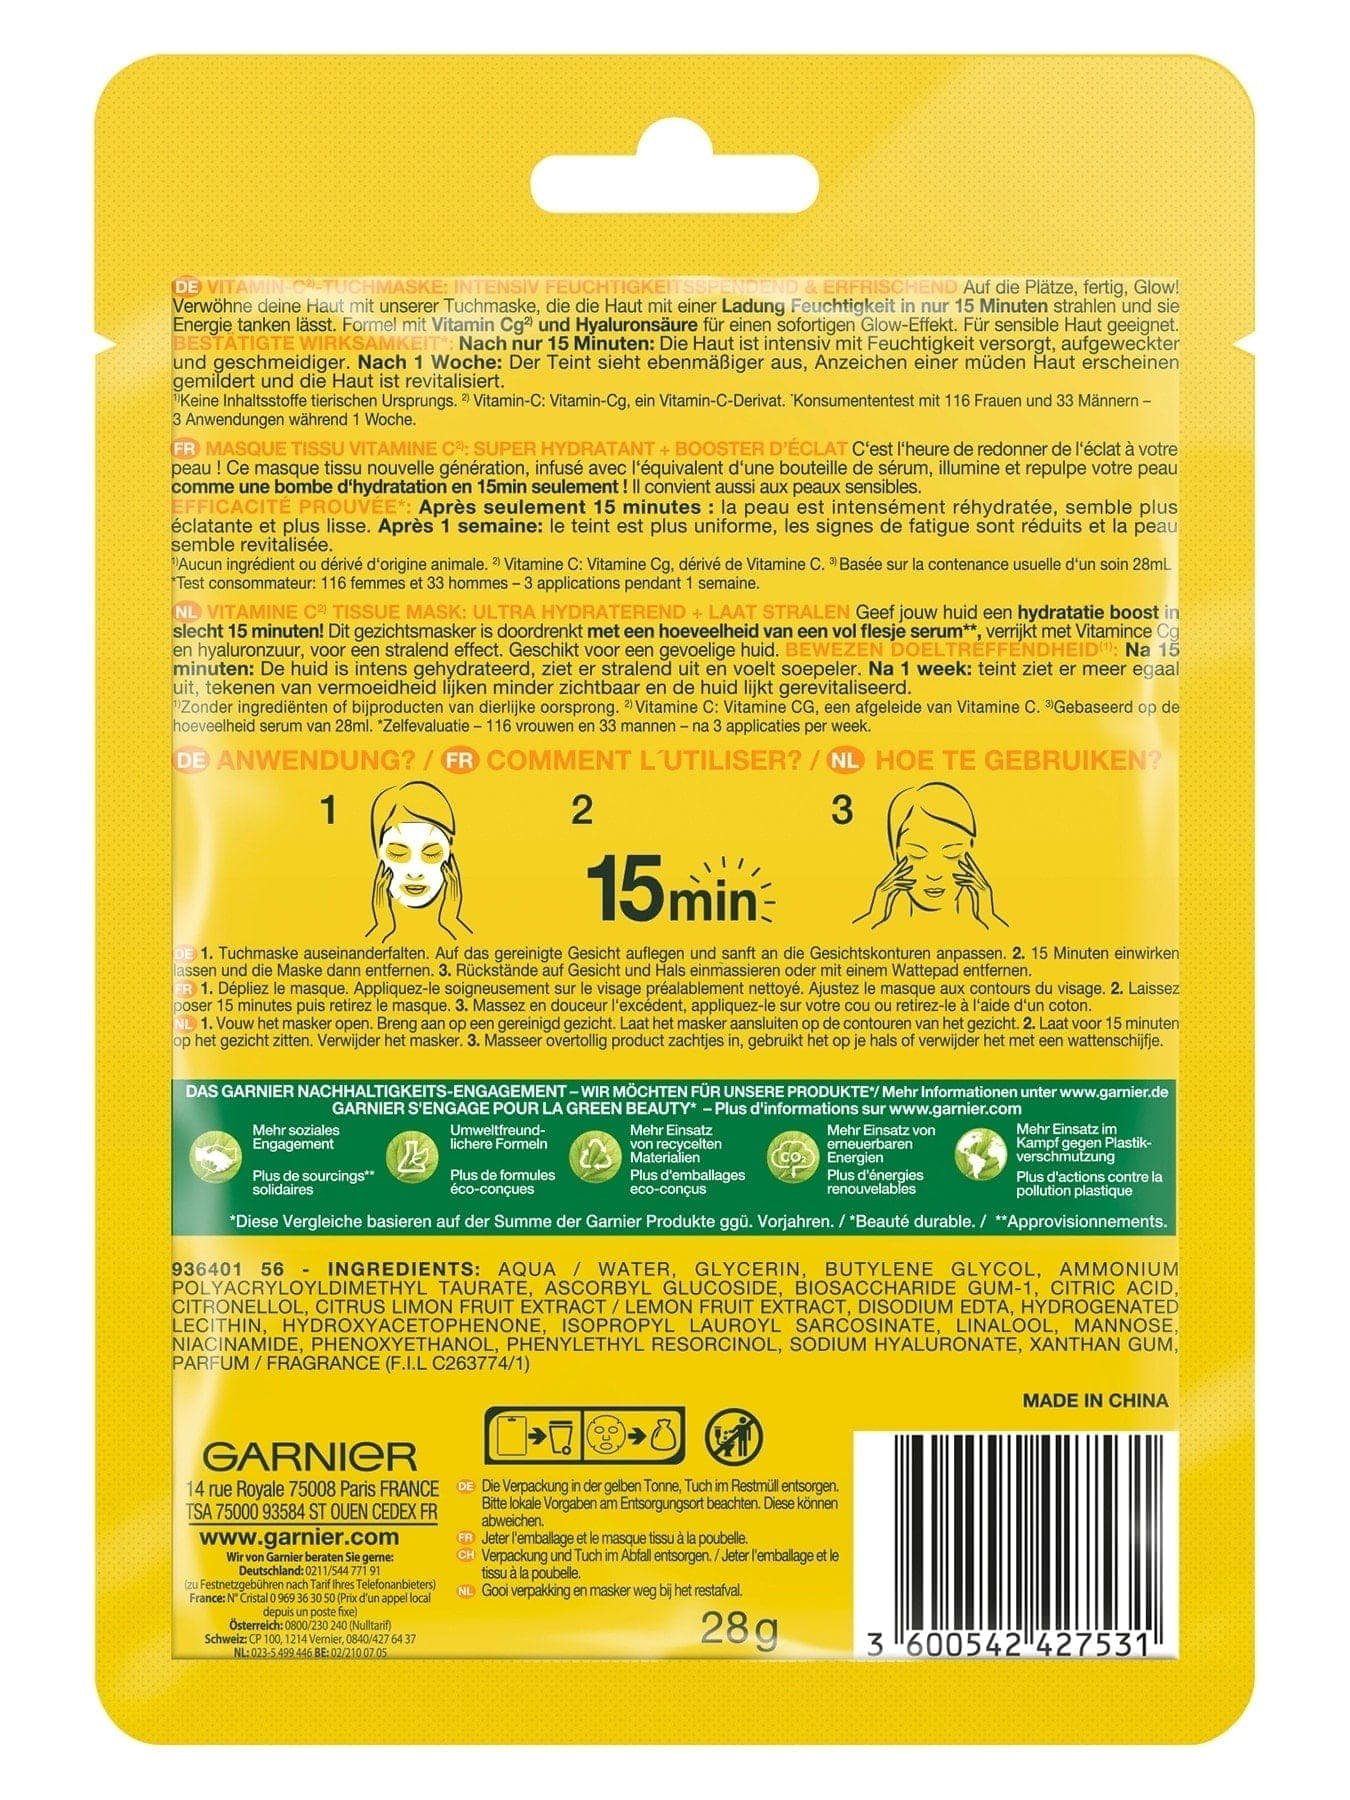 Garnier Skin Active Vitamin C Tuchmaske - Verpackung Rückansicht